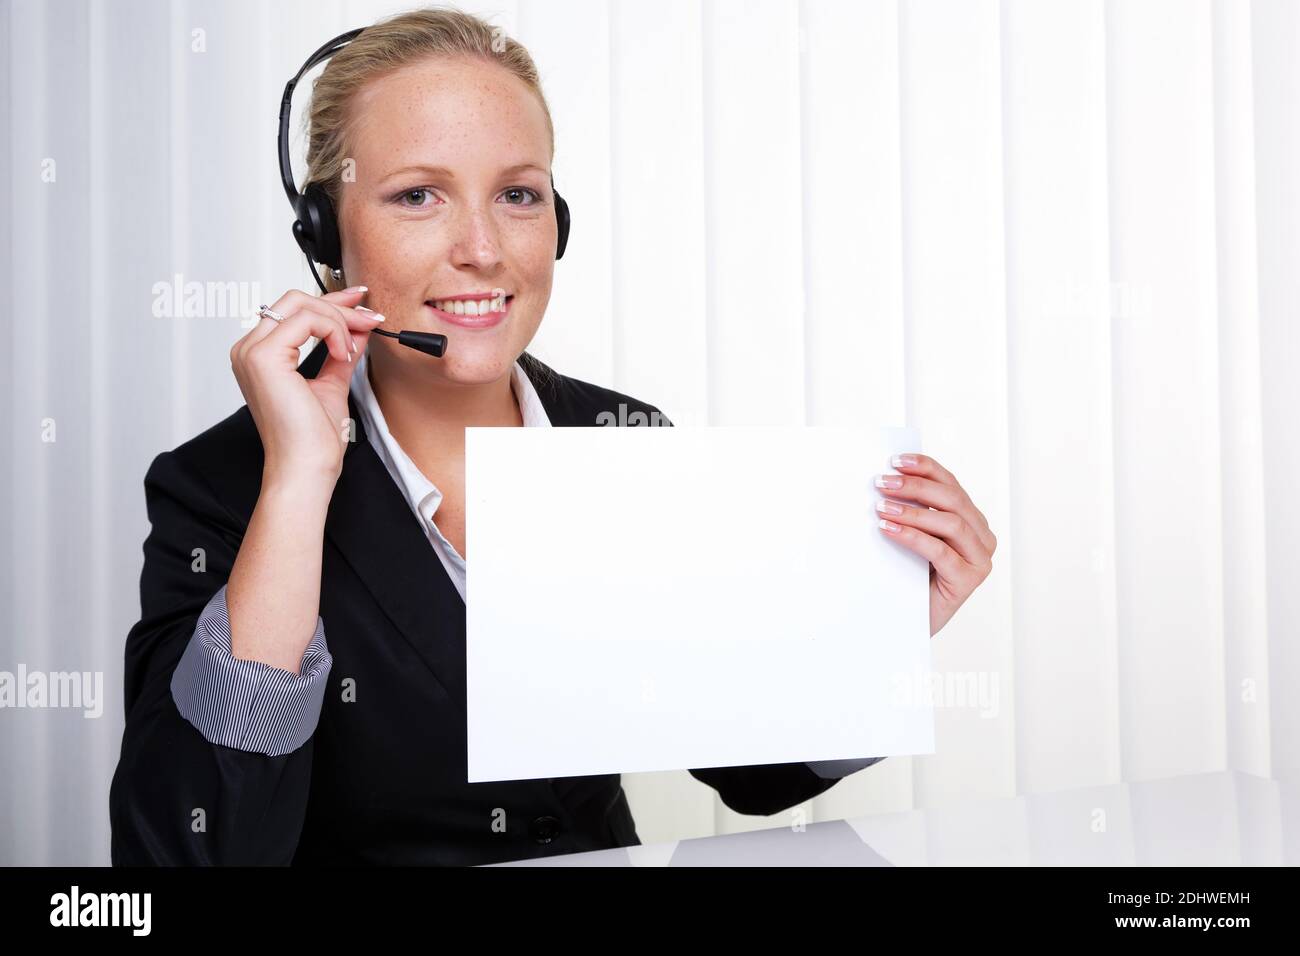 Eine freundliche junge Frau mit Headset im Kundendienst telefoniert mit einem Kunden. Freundliche Hotline Mitarbeiterin. Stock Photo